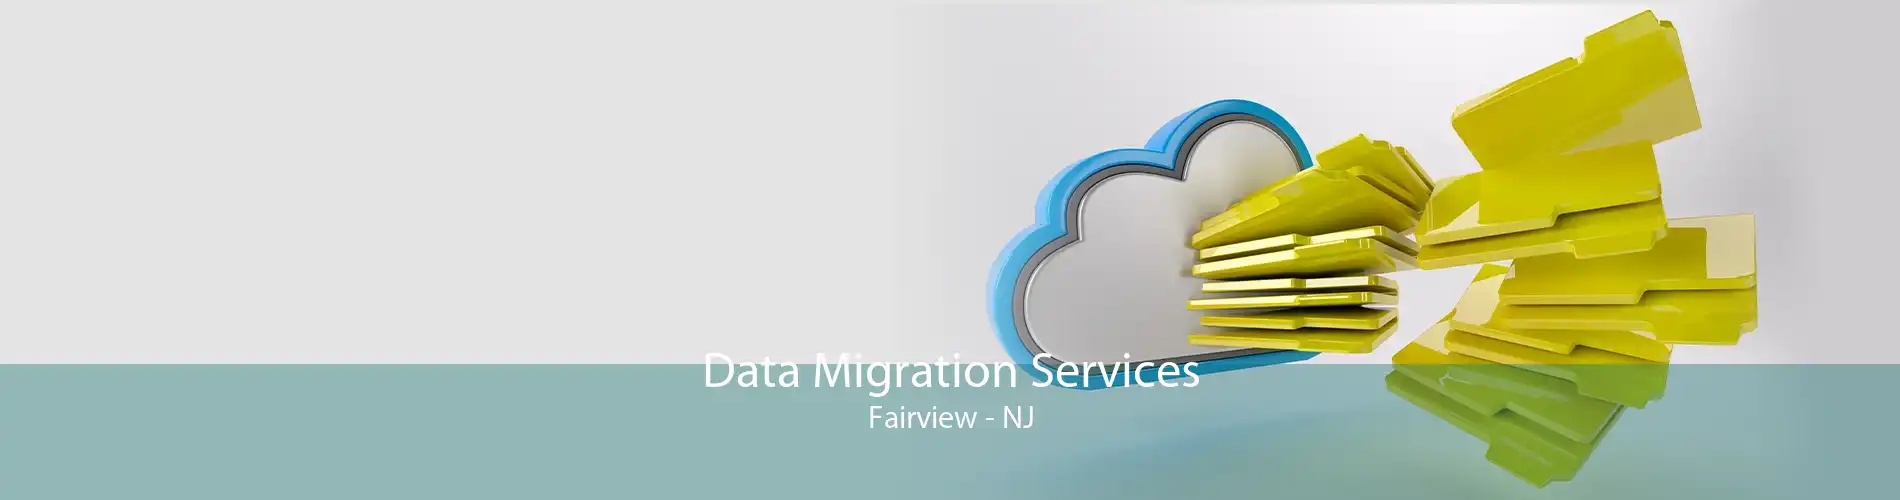 Data Migration Services Fairview - NJ